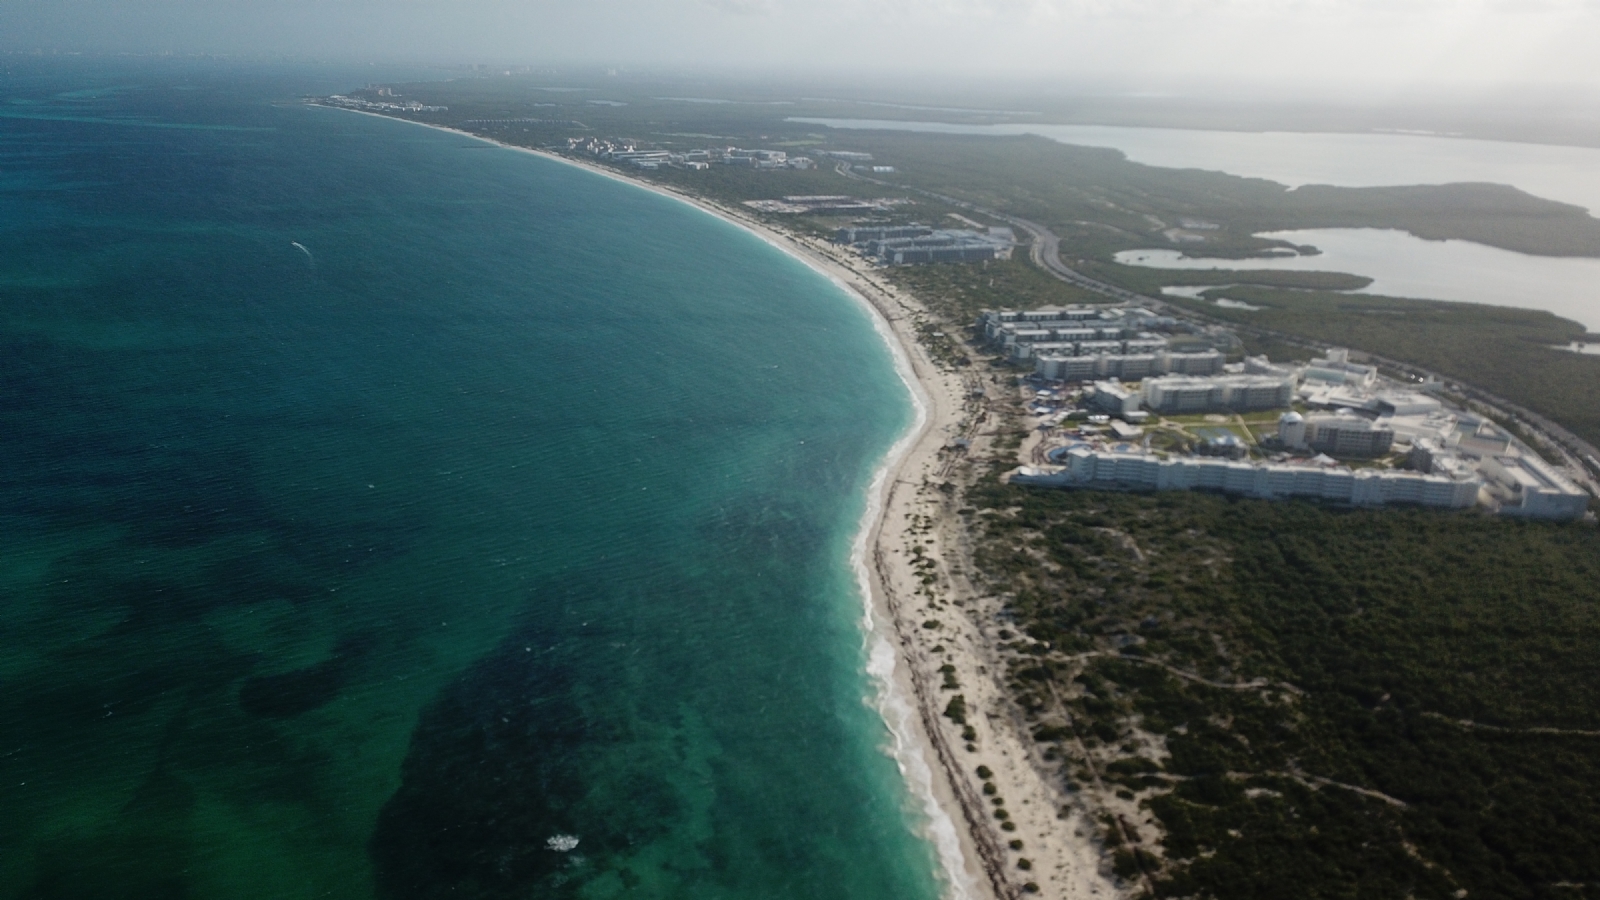 Desarrollos inmobiliarios, peligro inminente para la selva de Quintana Roo